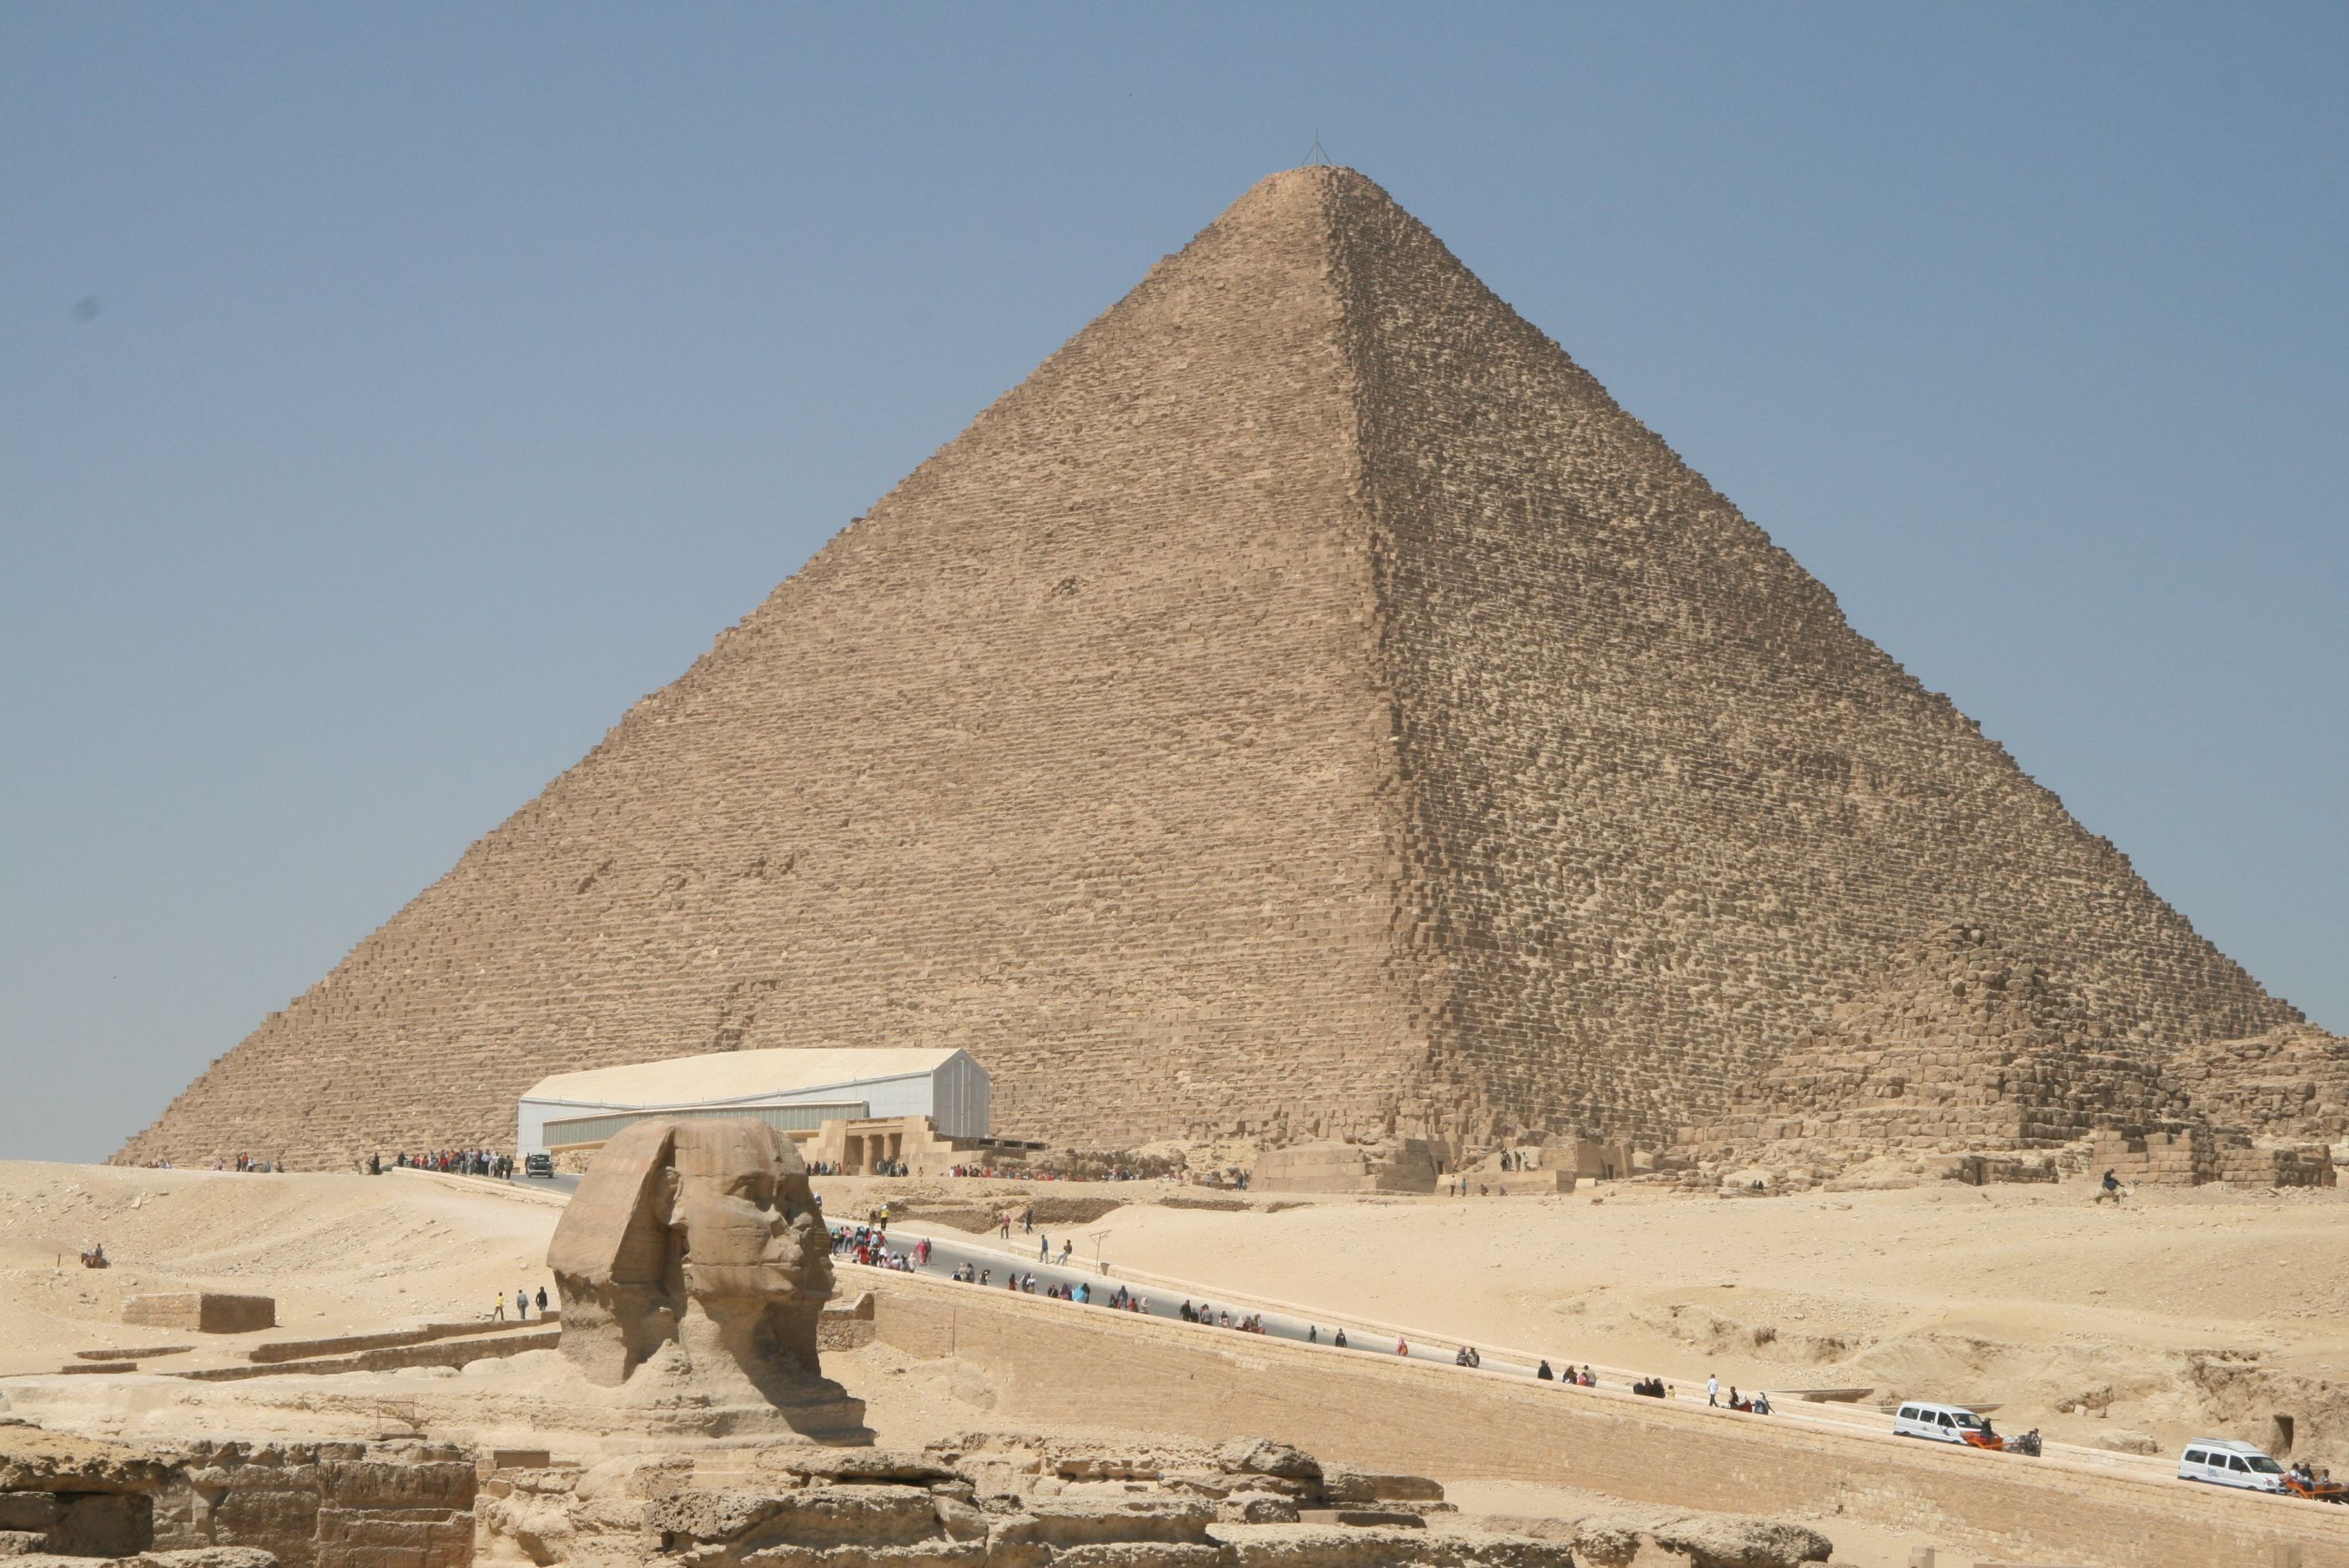 Pontos turísticos no Egito – meu relato de experiência